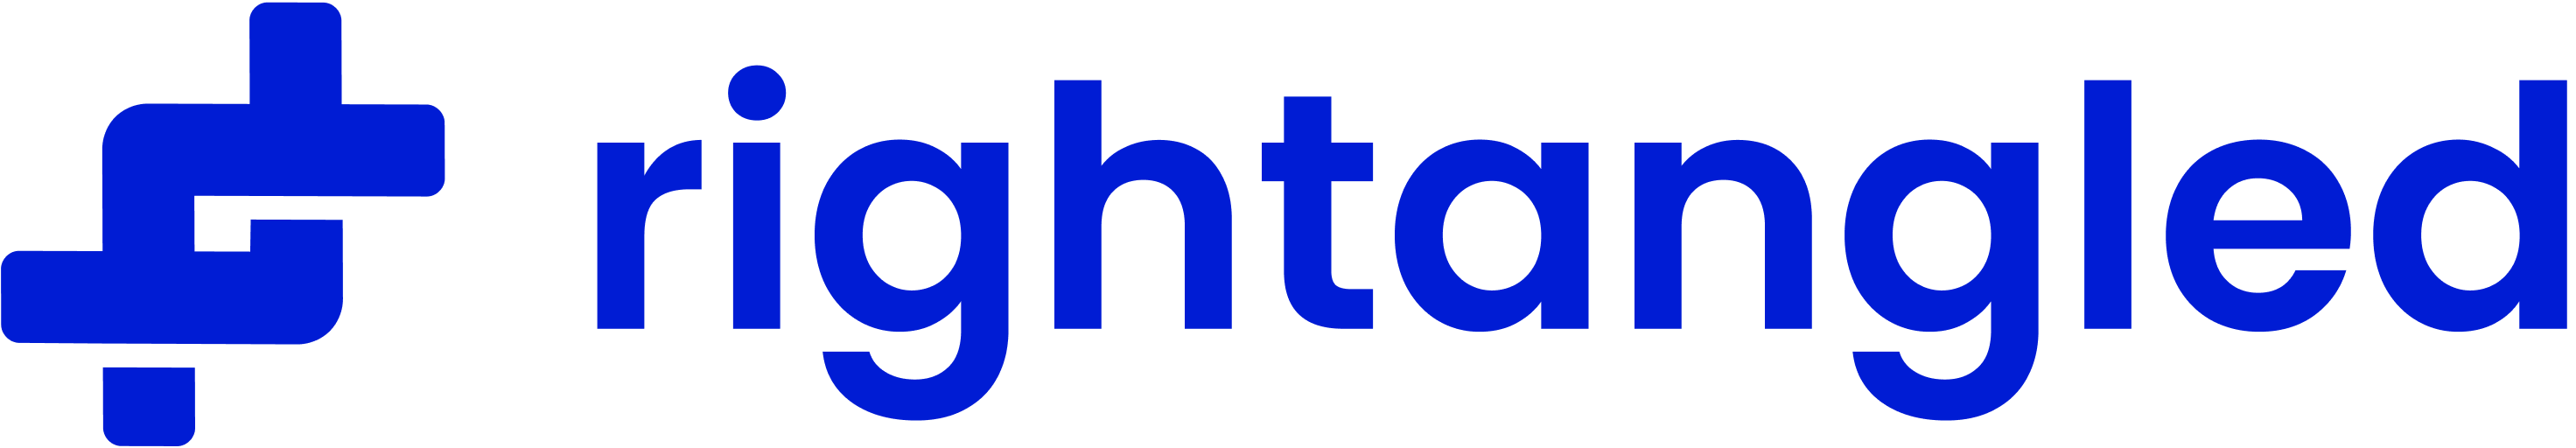 rightangled logo